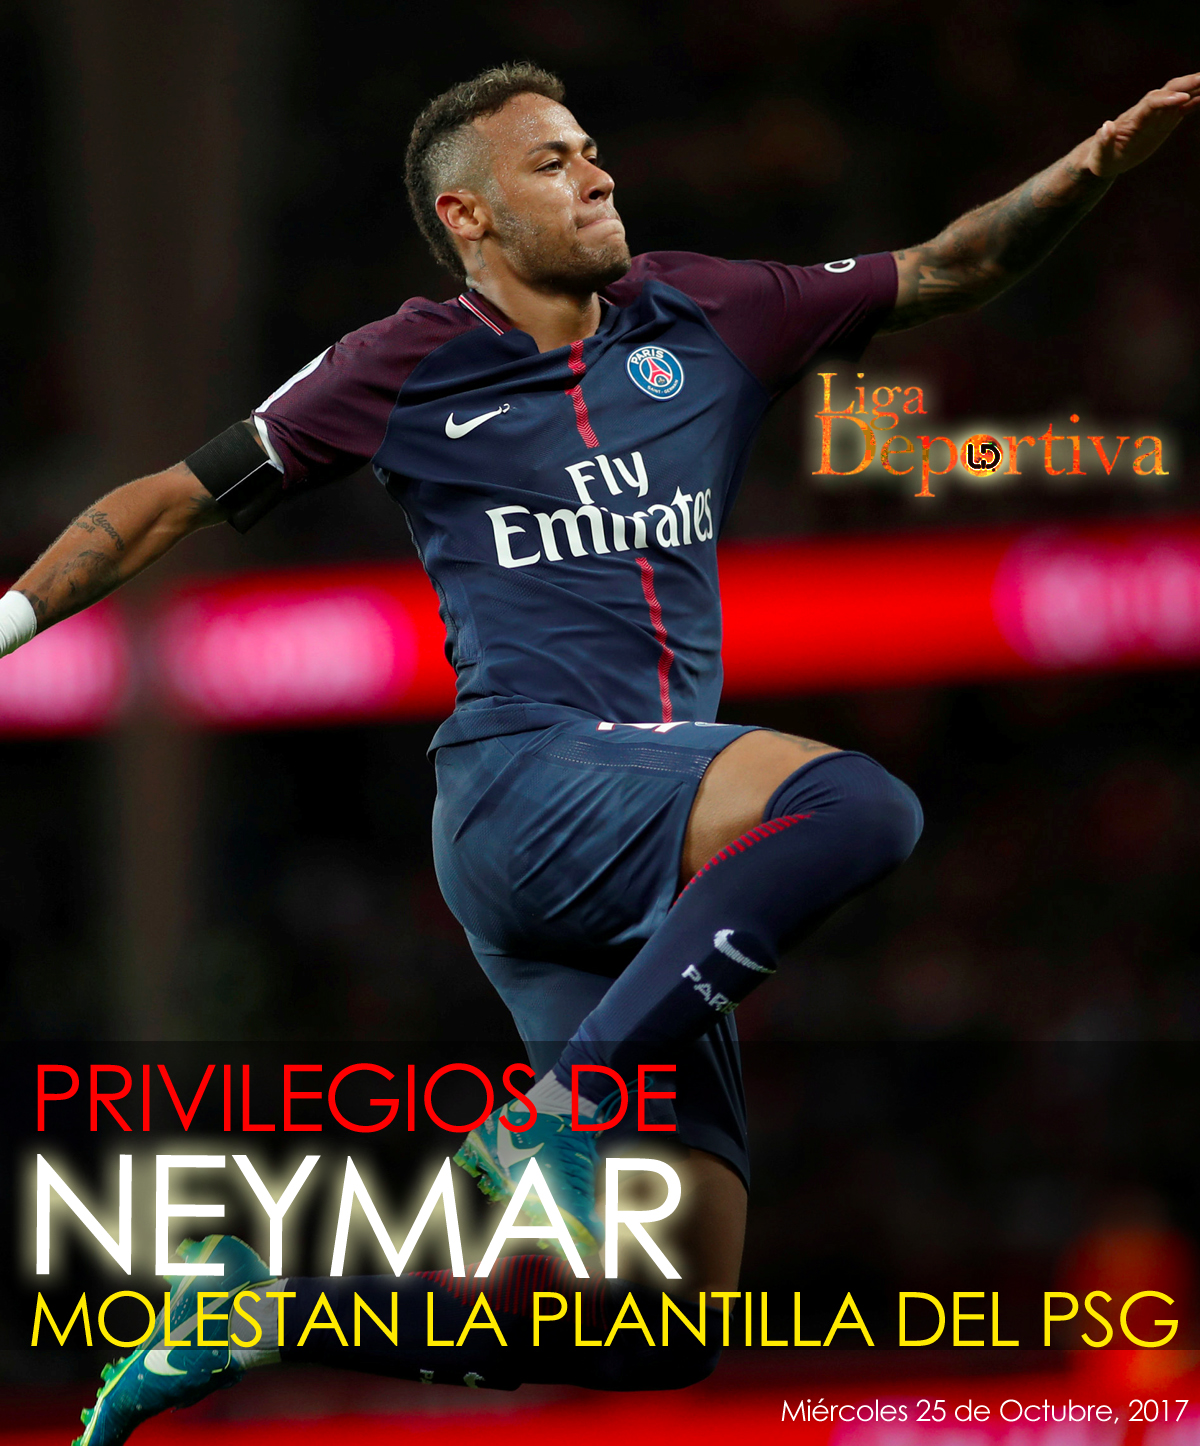 Privilegios de Neymar enojan a la plantilla del PSG 